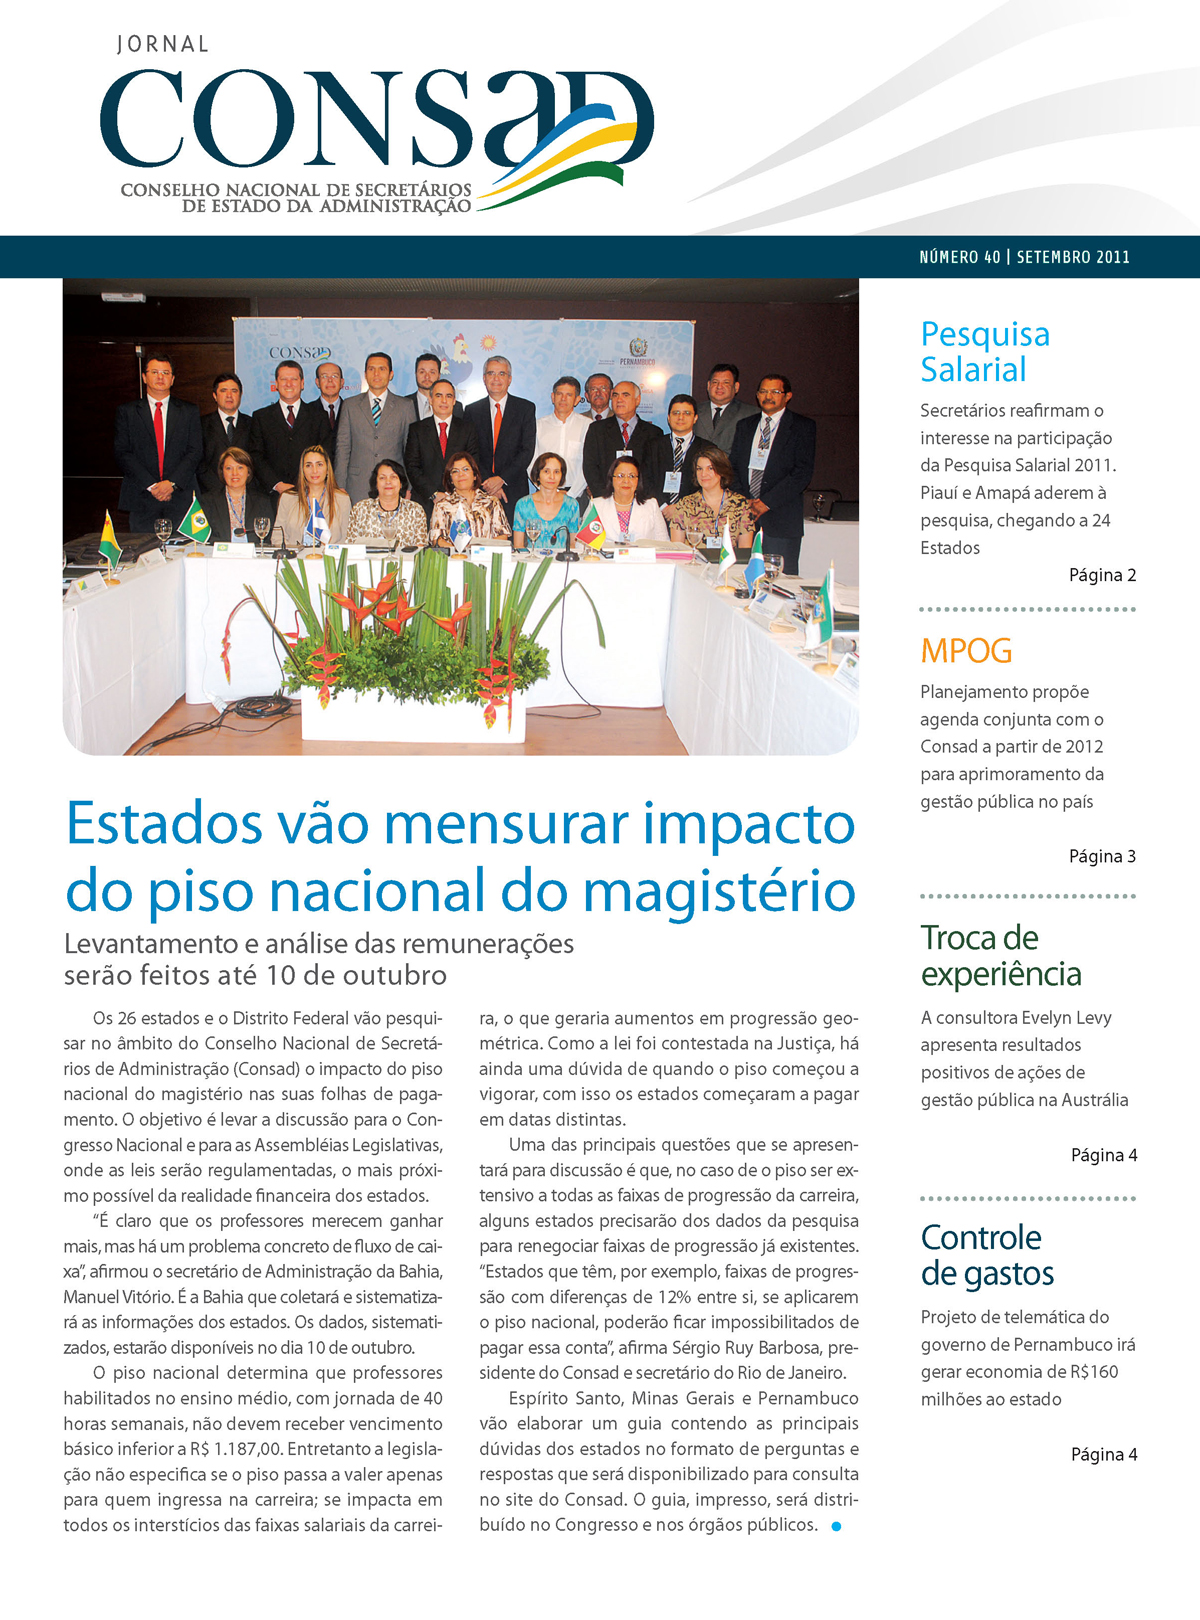 Jornal do Consad Número 40 – Setembro de 2011